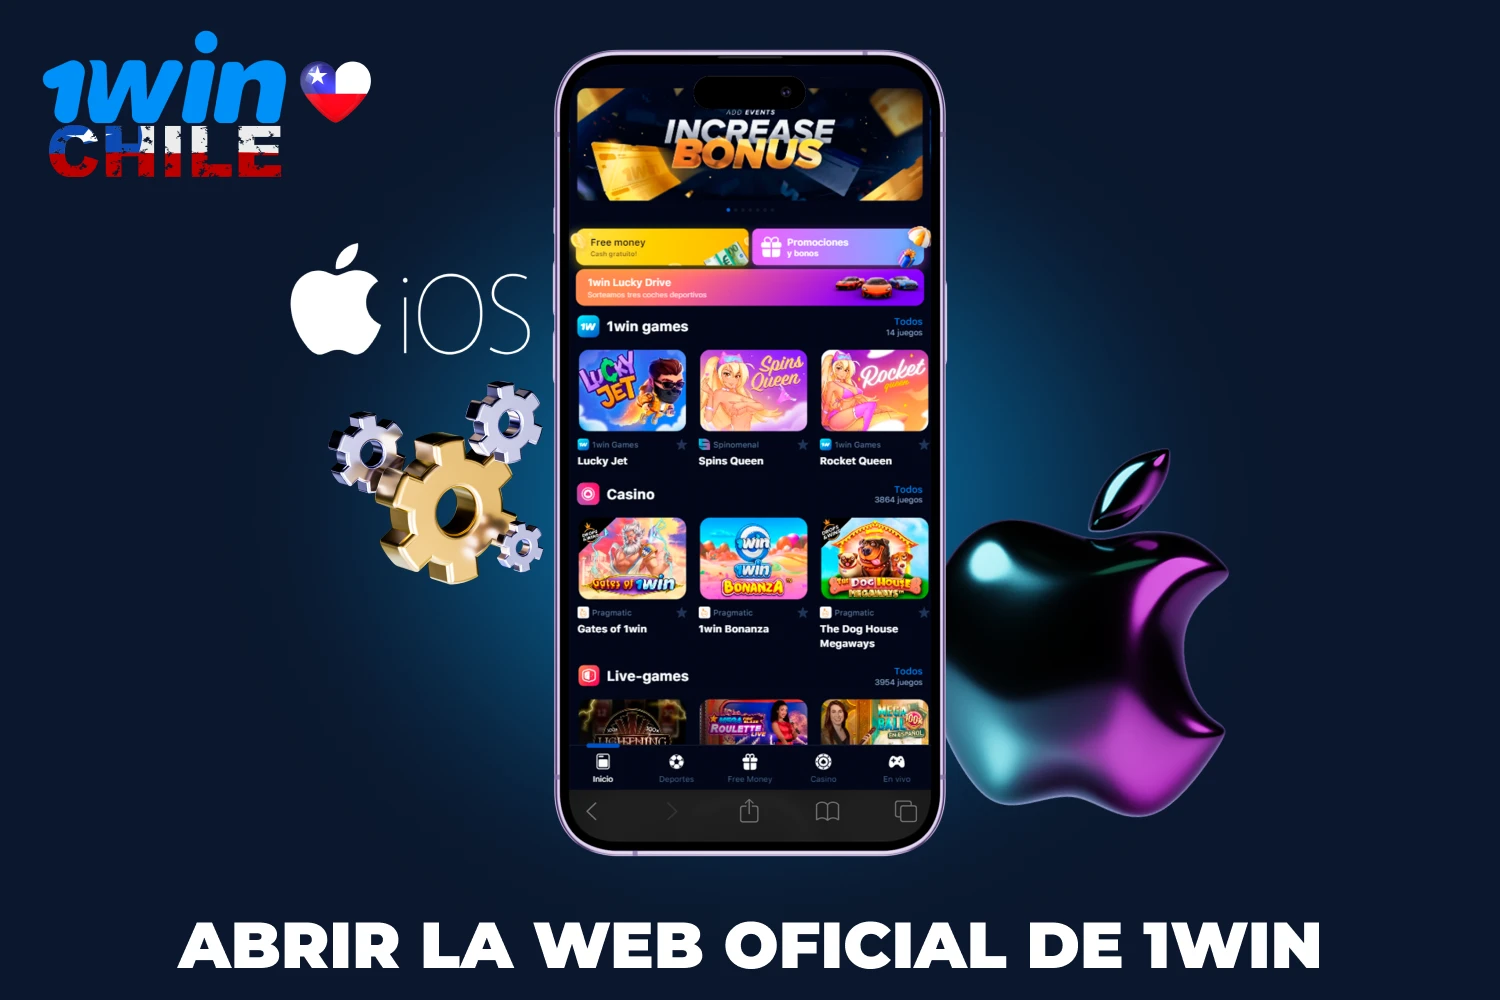 Los jugadores chilenos deben visitar la página web oficial de 1win antes de descargar la app de 1win en un dispositivo iOS